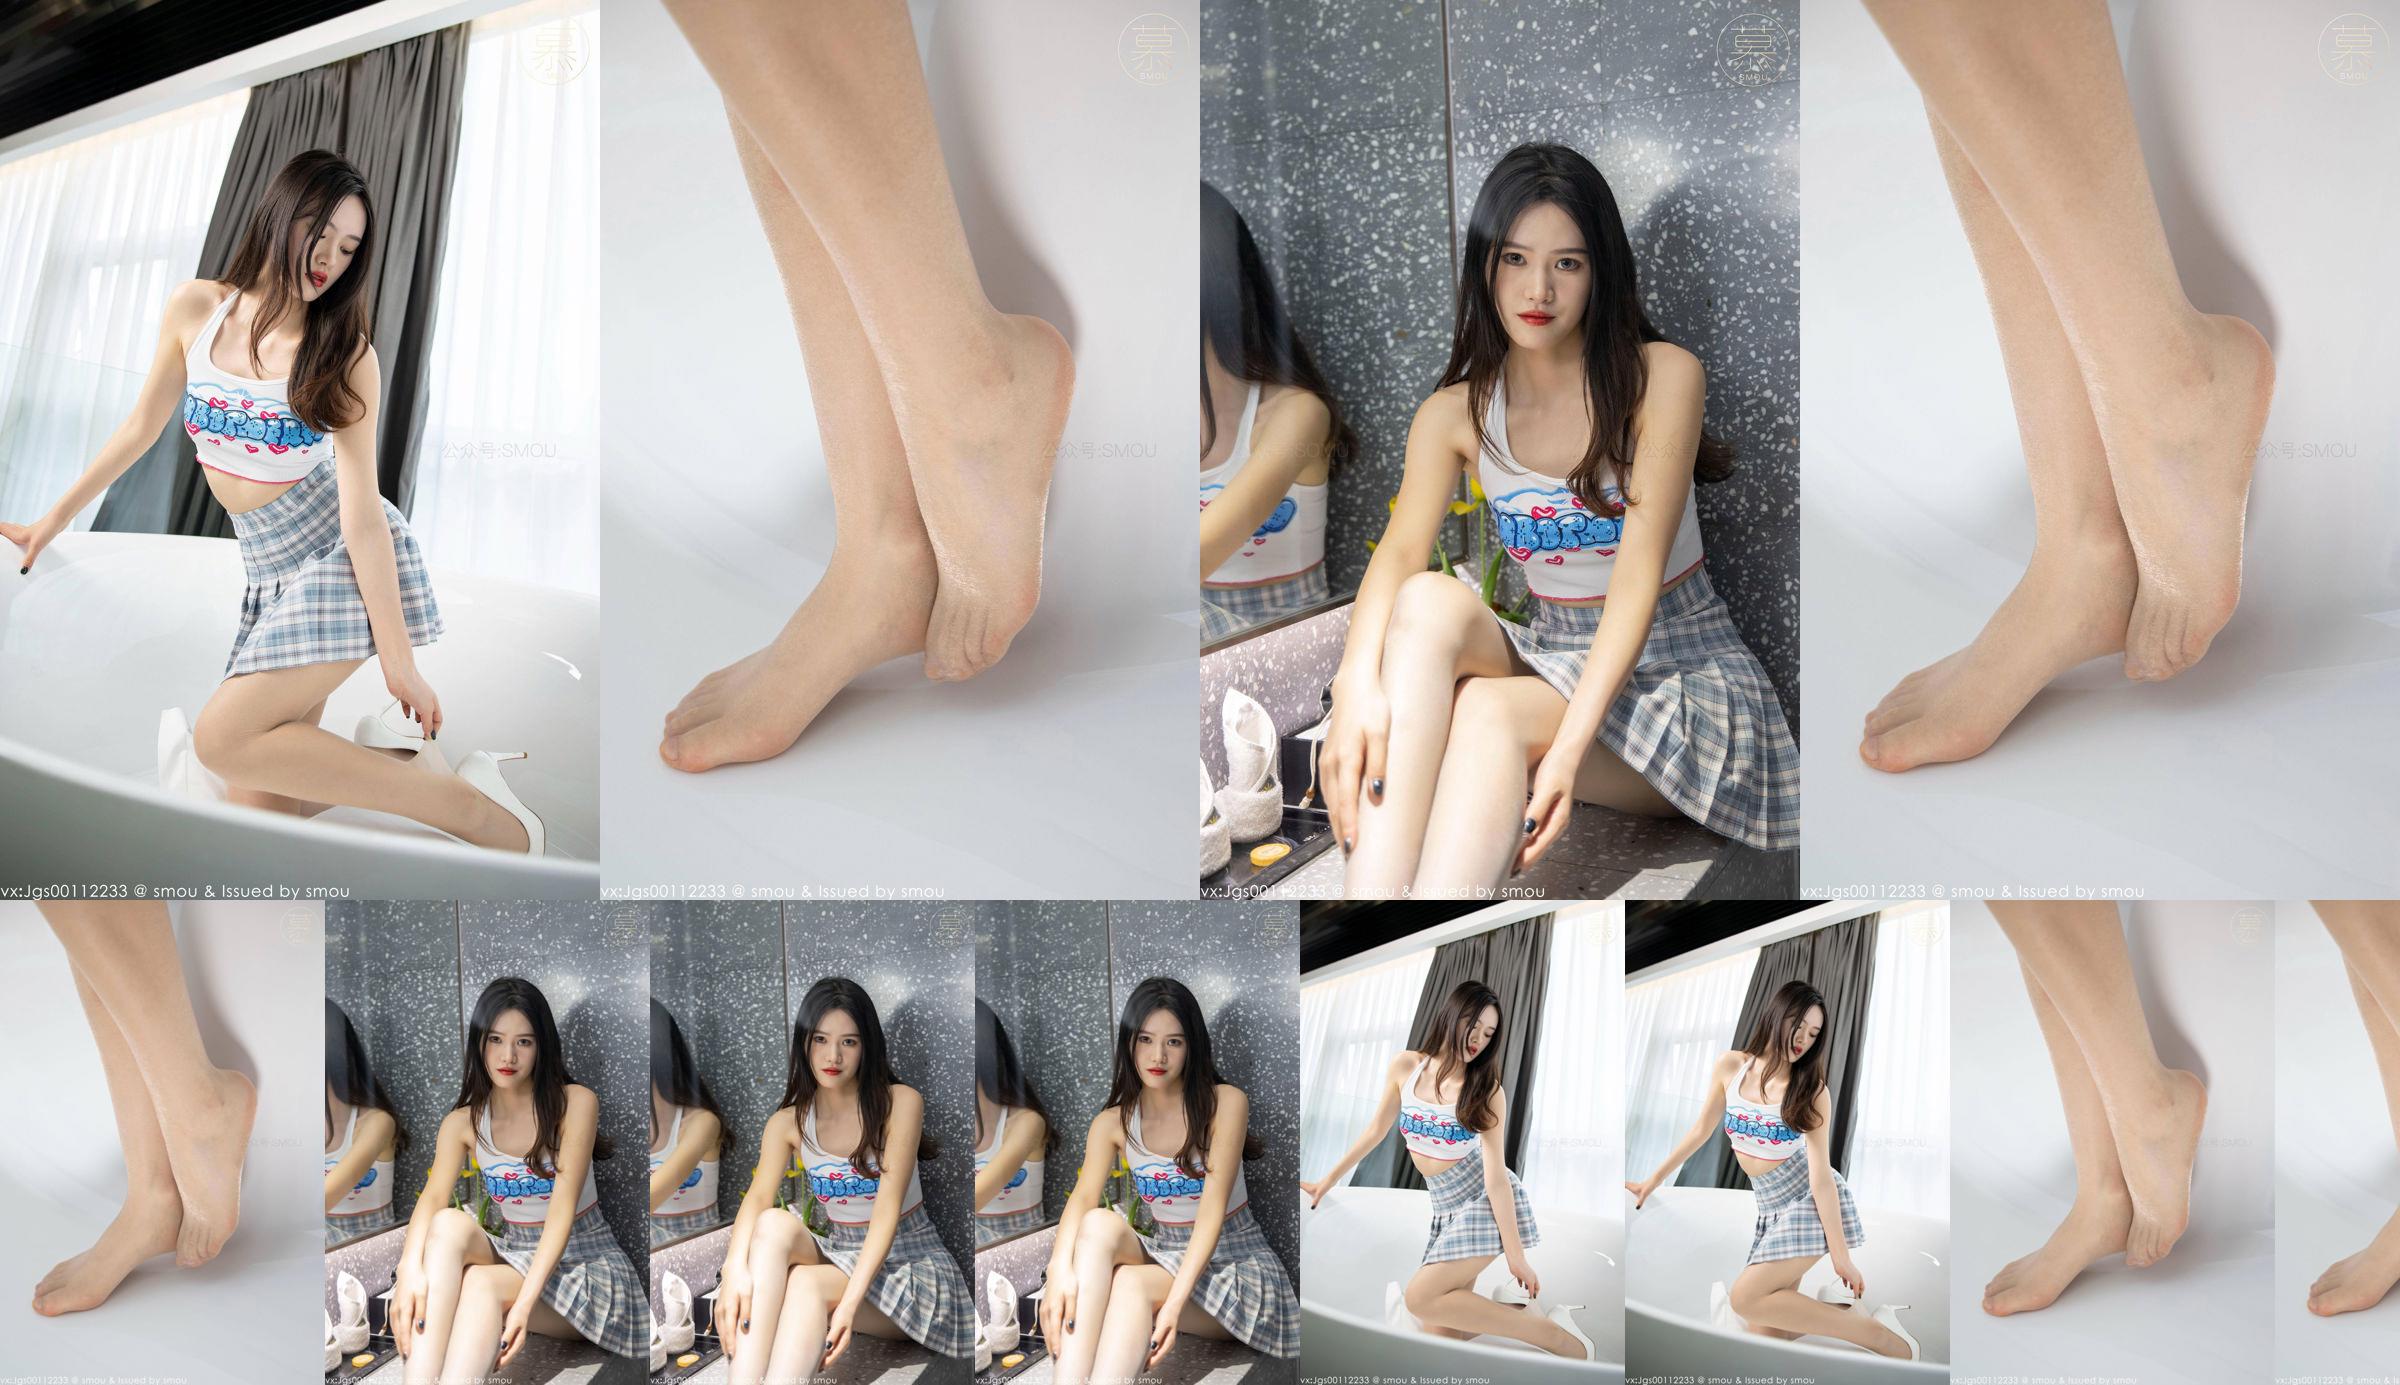 [SMOU] Honey Series M014 Nieuw model Weiwei Panty Mooie beenbedekking No.2299d6 Pagina 1